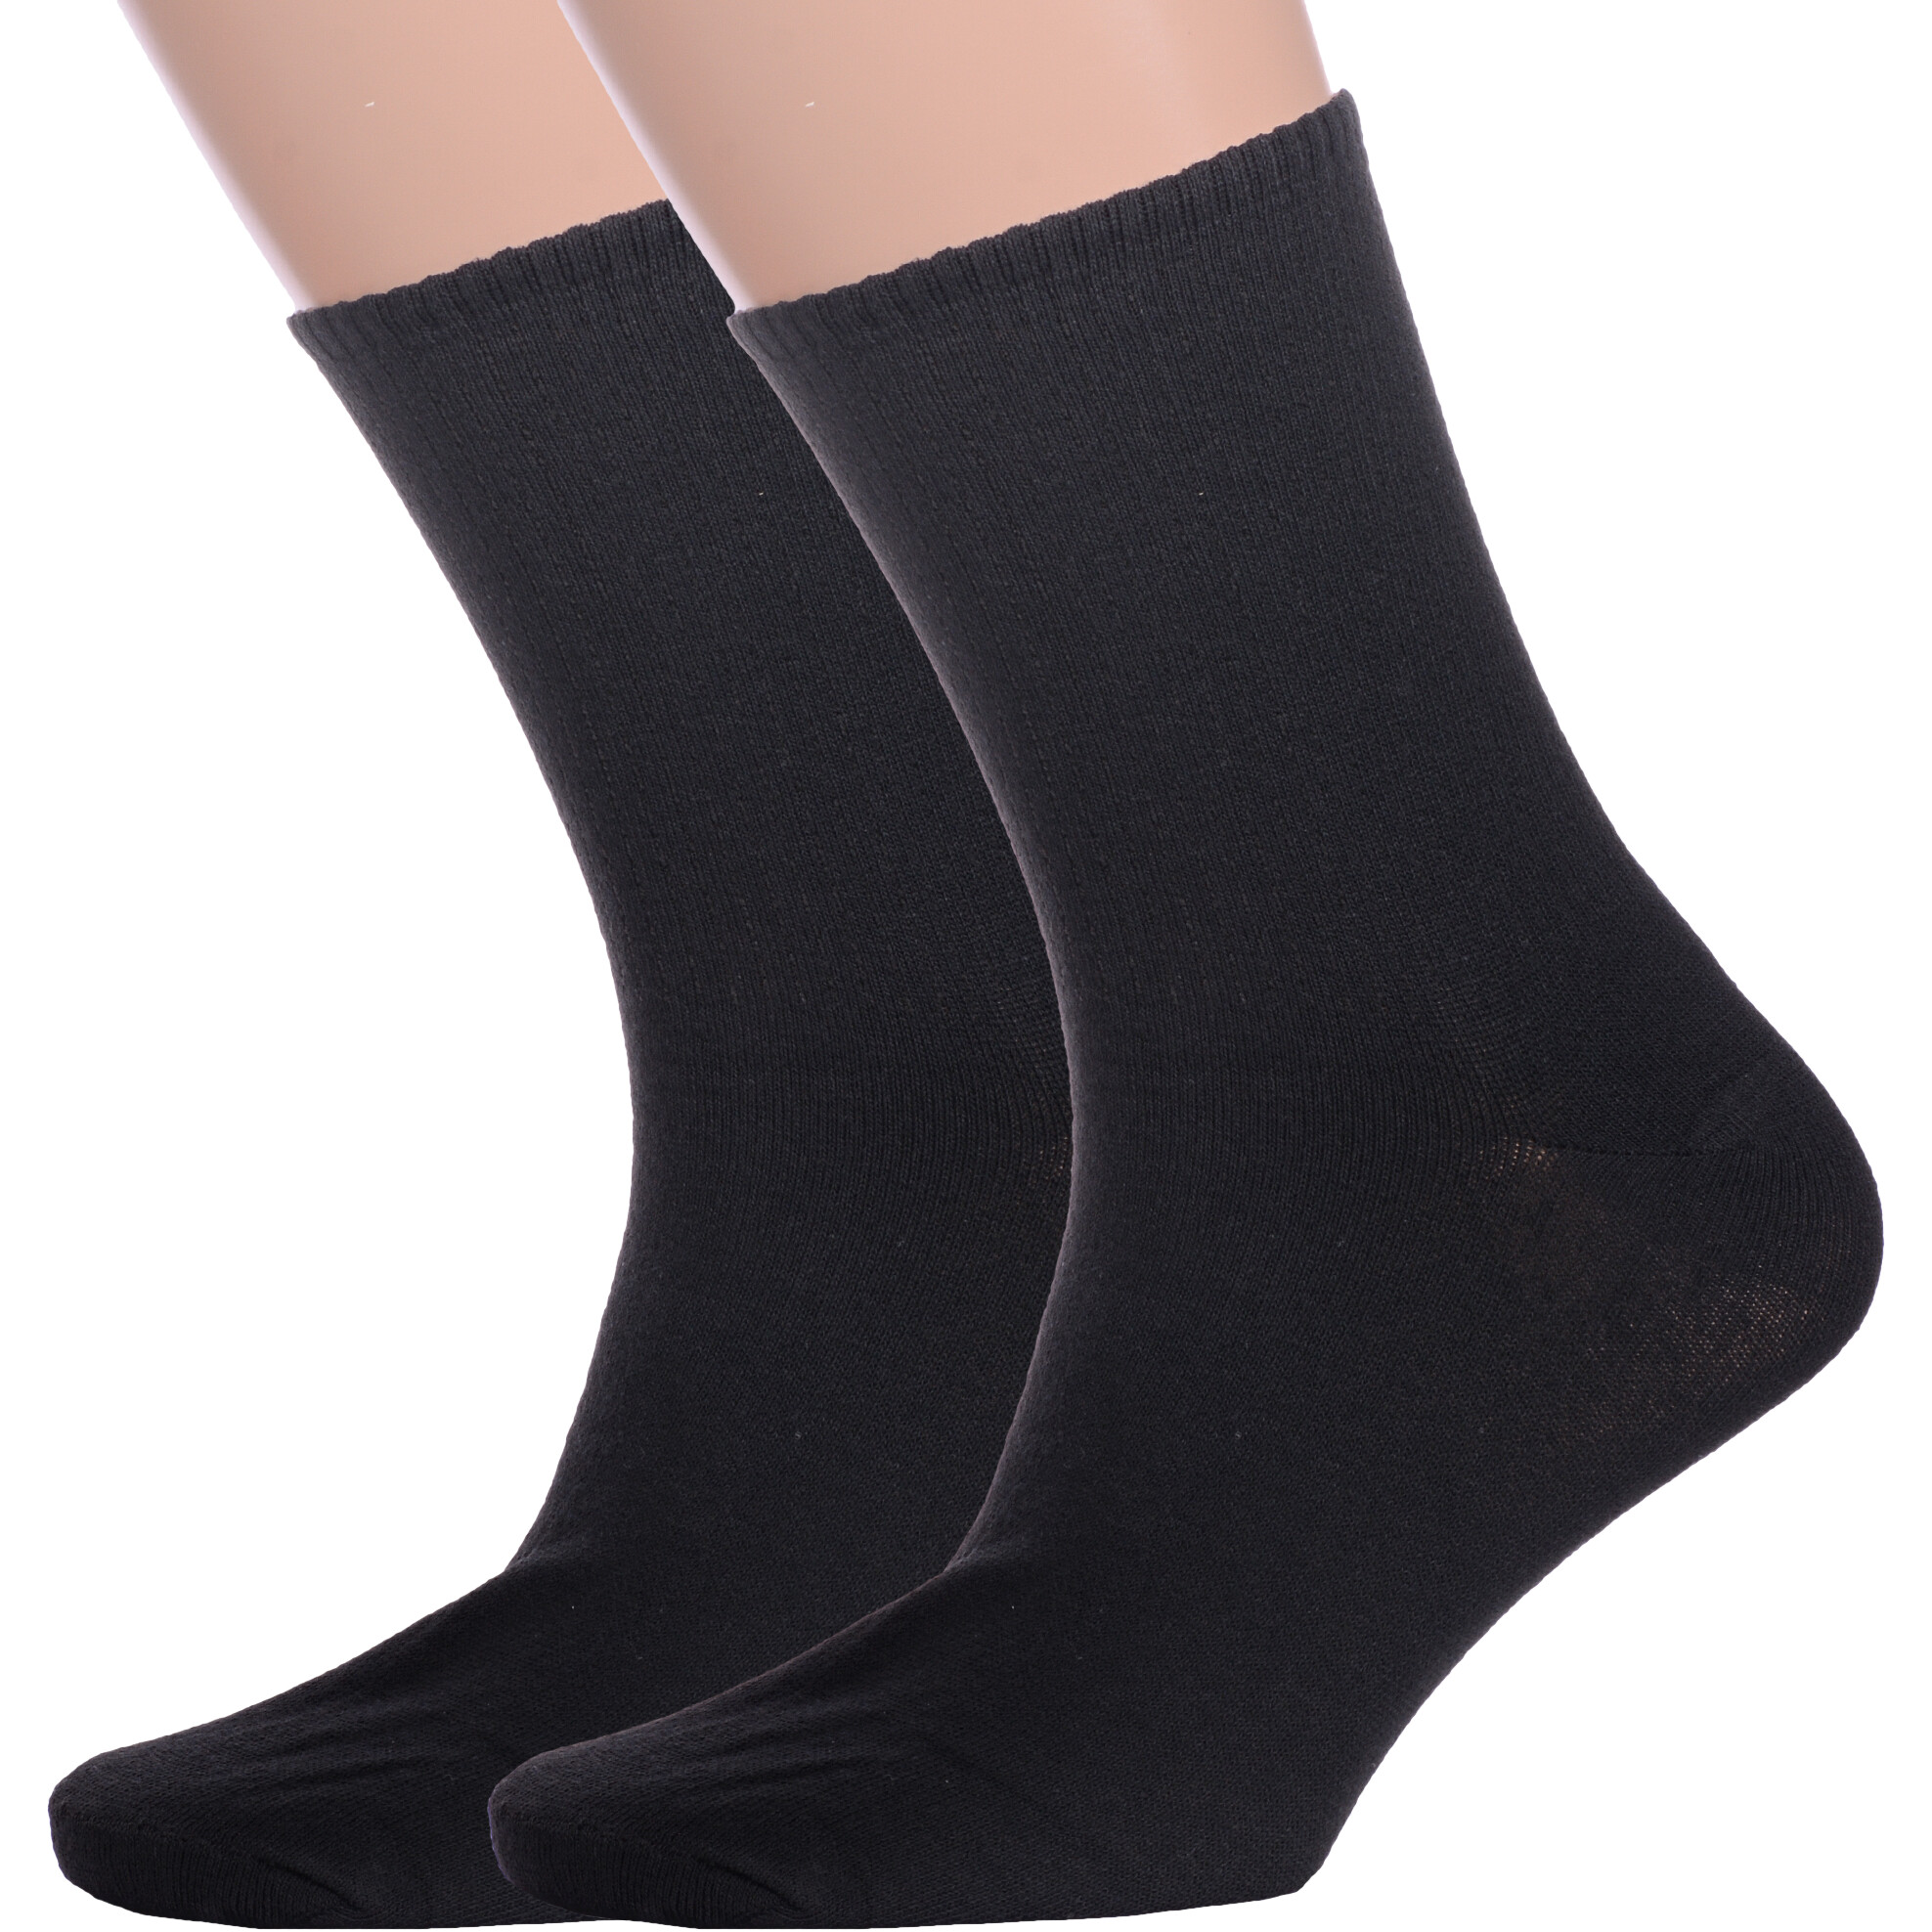 Комплект носков мужских Альтаир 2-М85 черных 29 2 пары